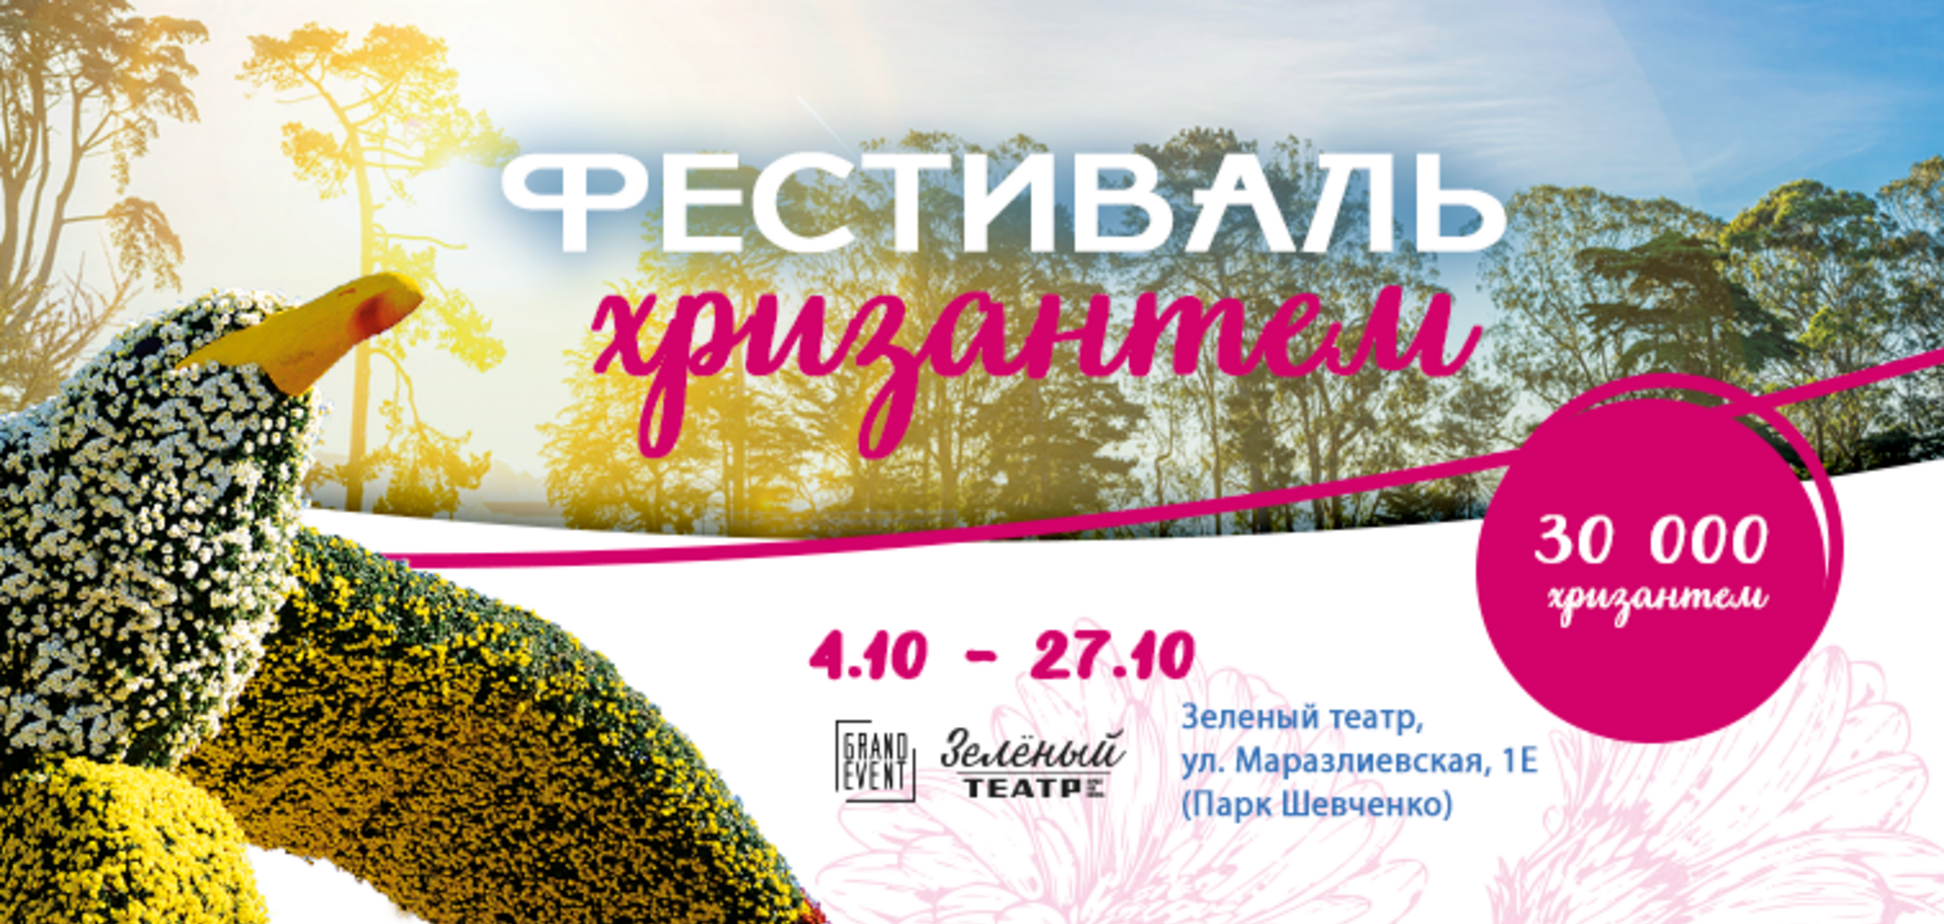 Морвокзал і Привоз з квітів: В Одесі вперше пройде фестиваль хризантем